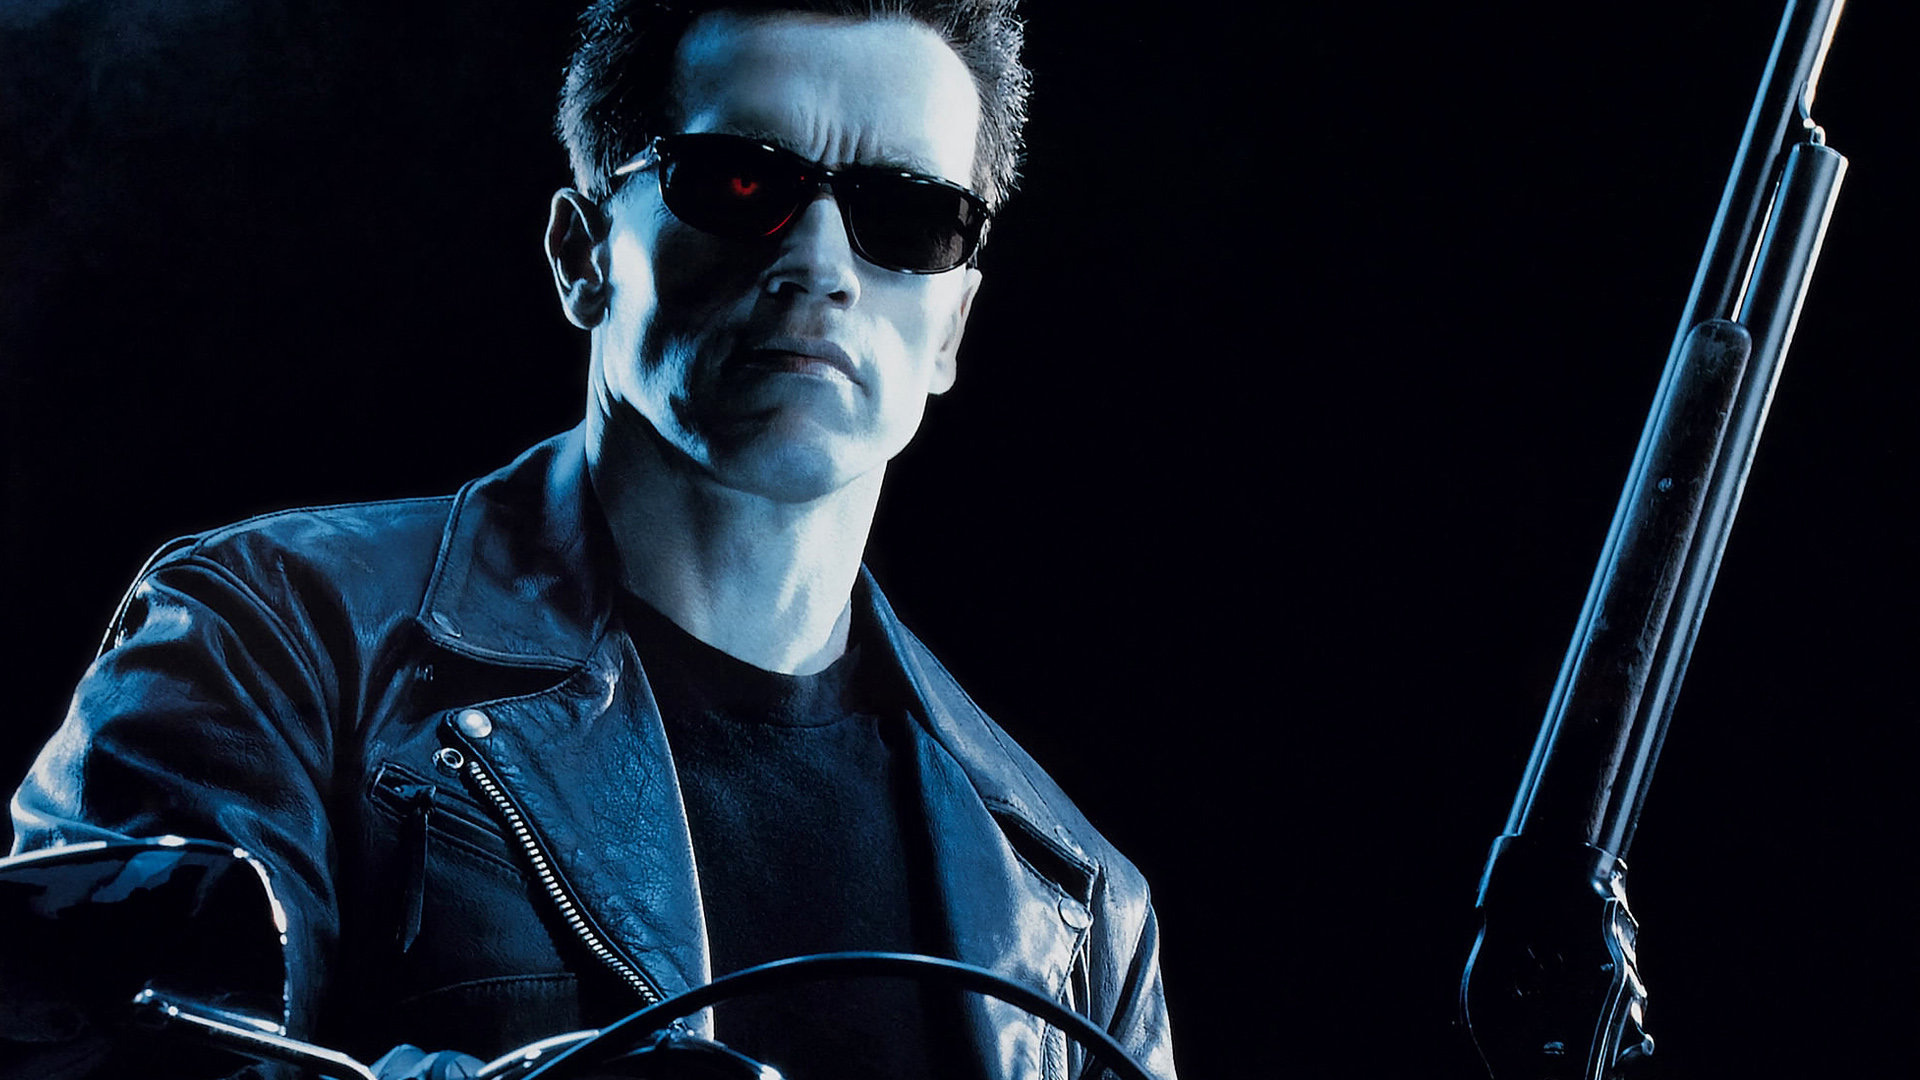 Zum 25. Jubiläum wieder im Kino: "Terminator 2"